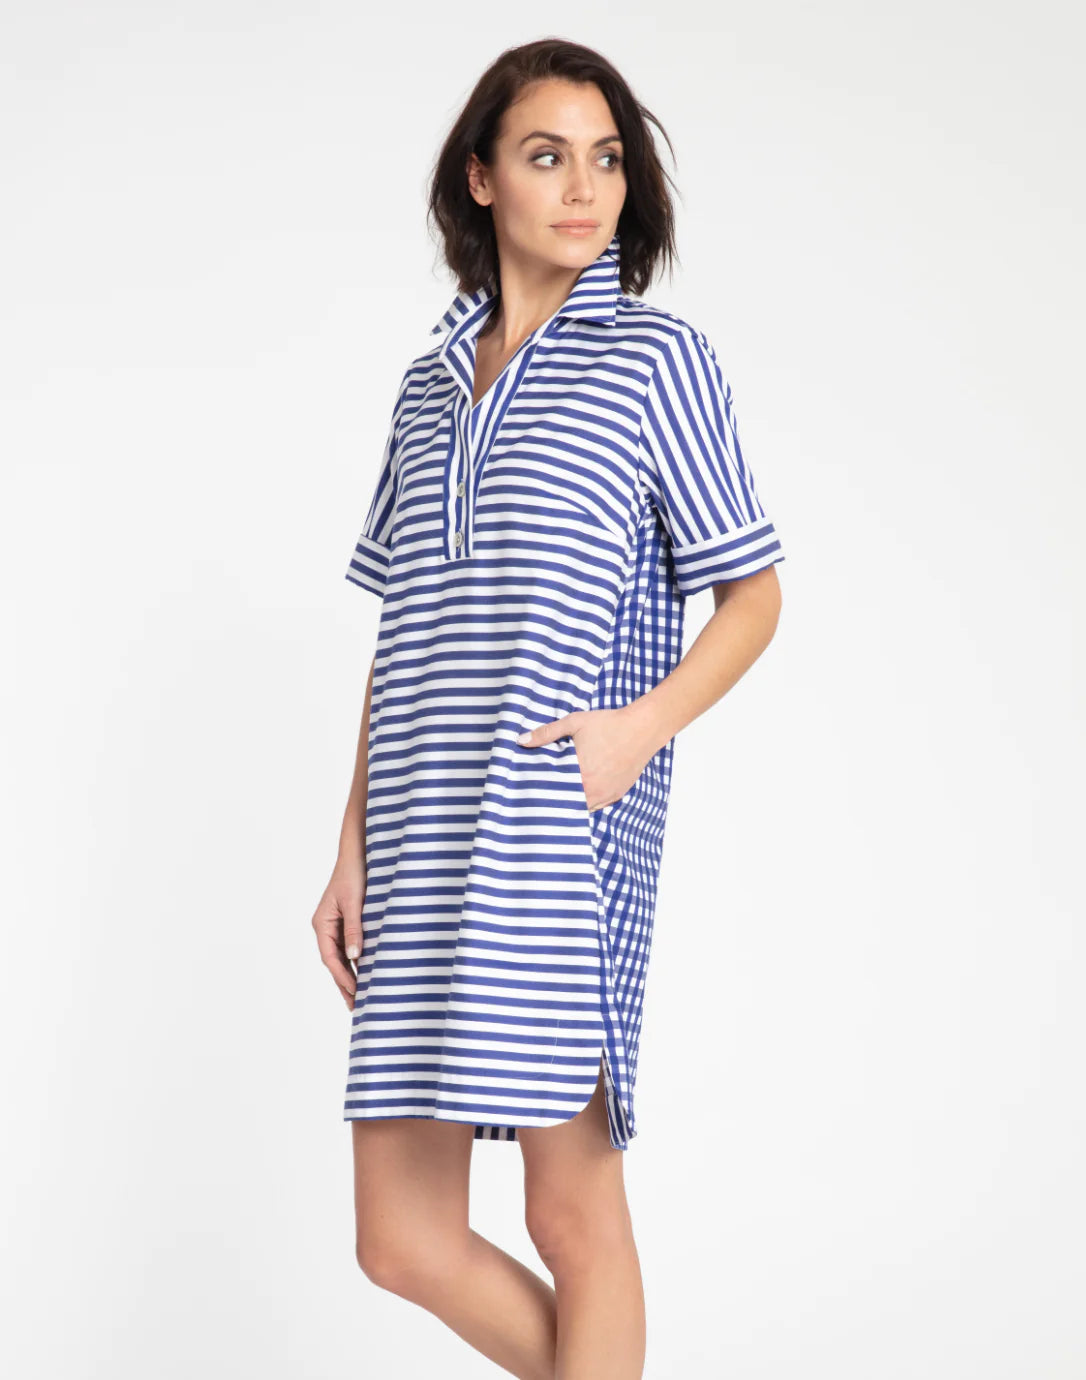 Aileen Short Sleeve Stripe/Gingham Dress